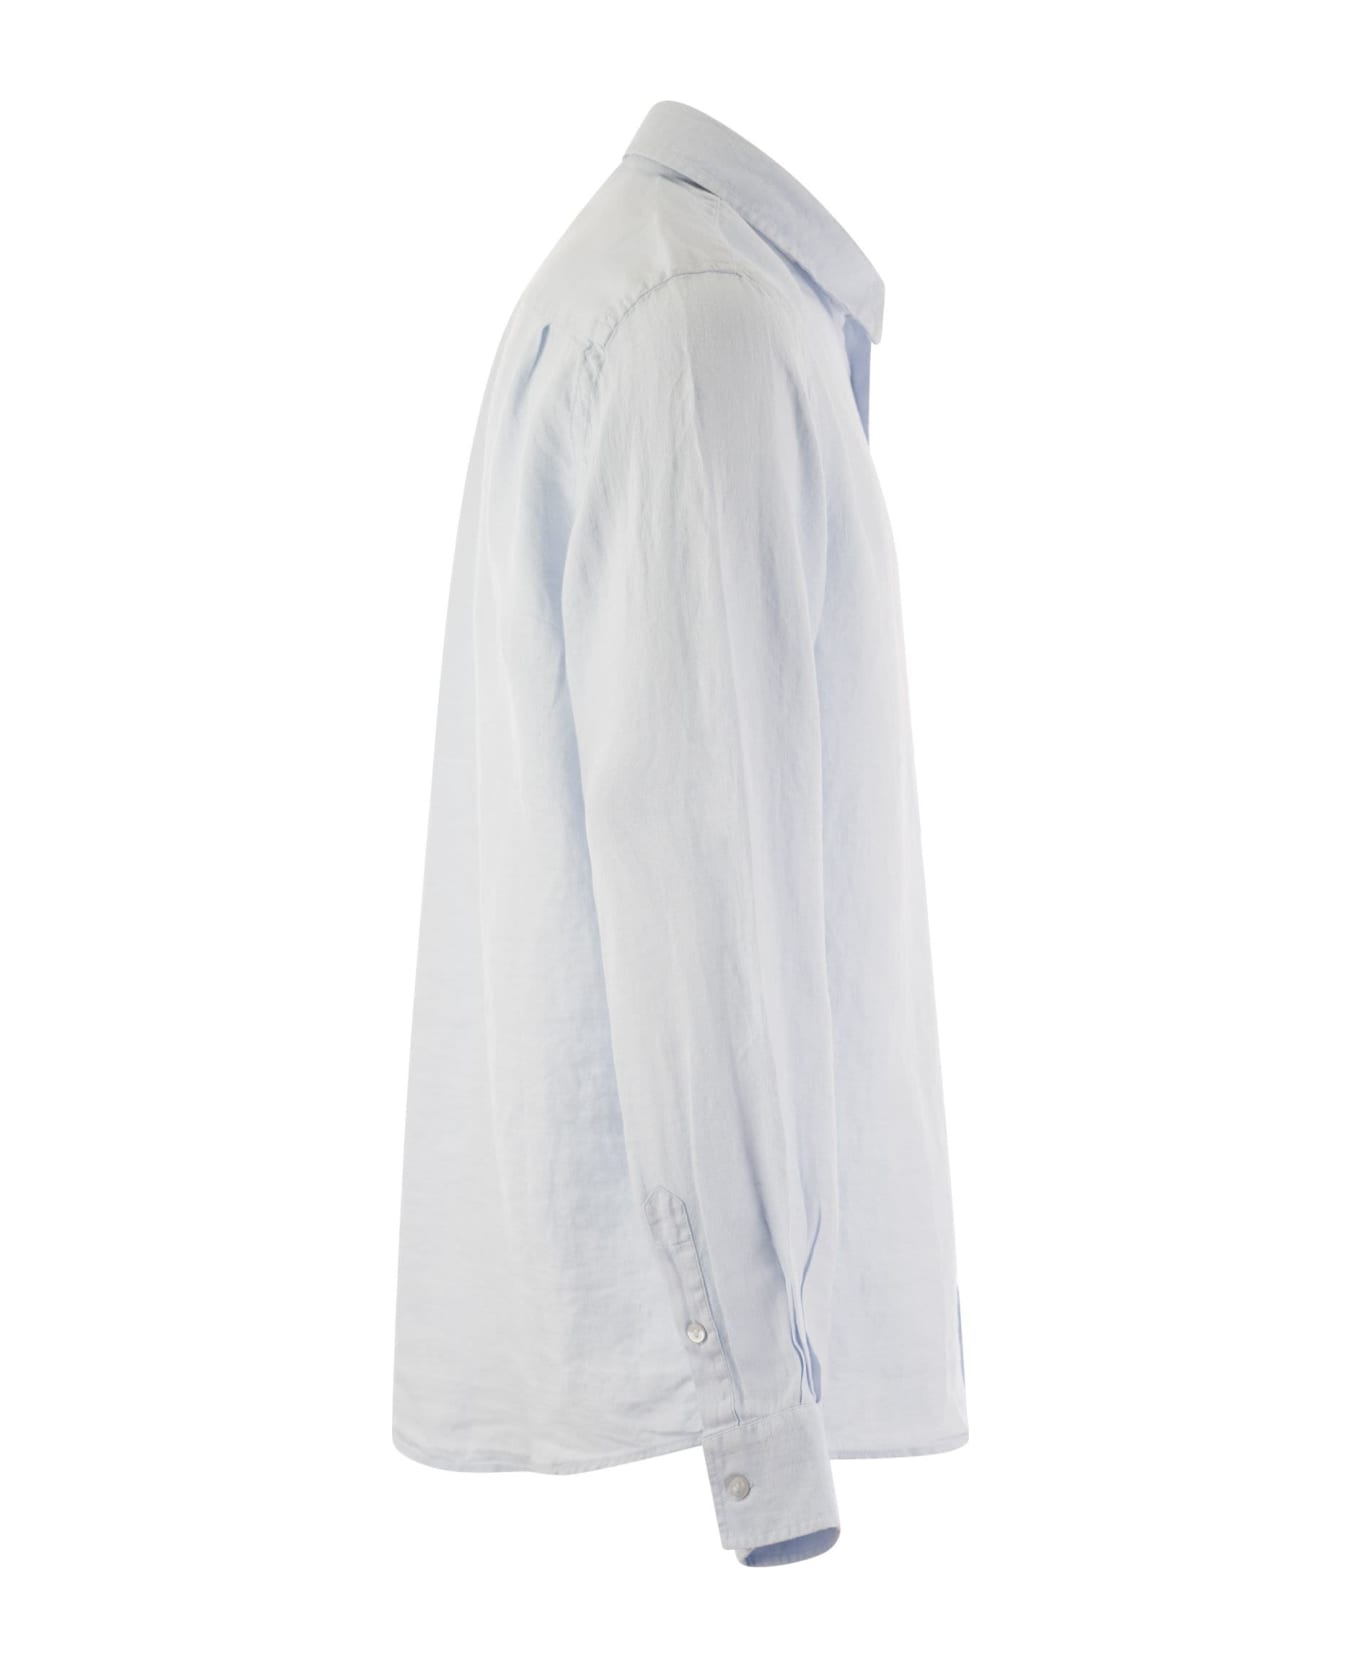 Vilebrequin Long-sleeved Linen Shirt - Sky